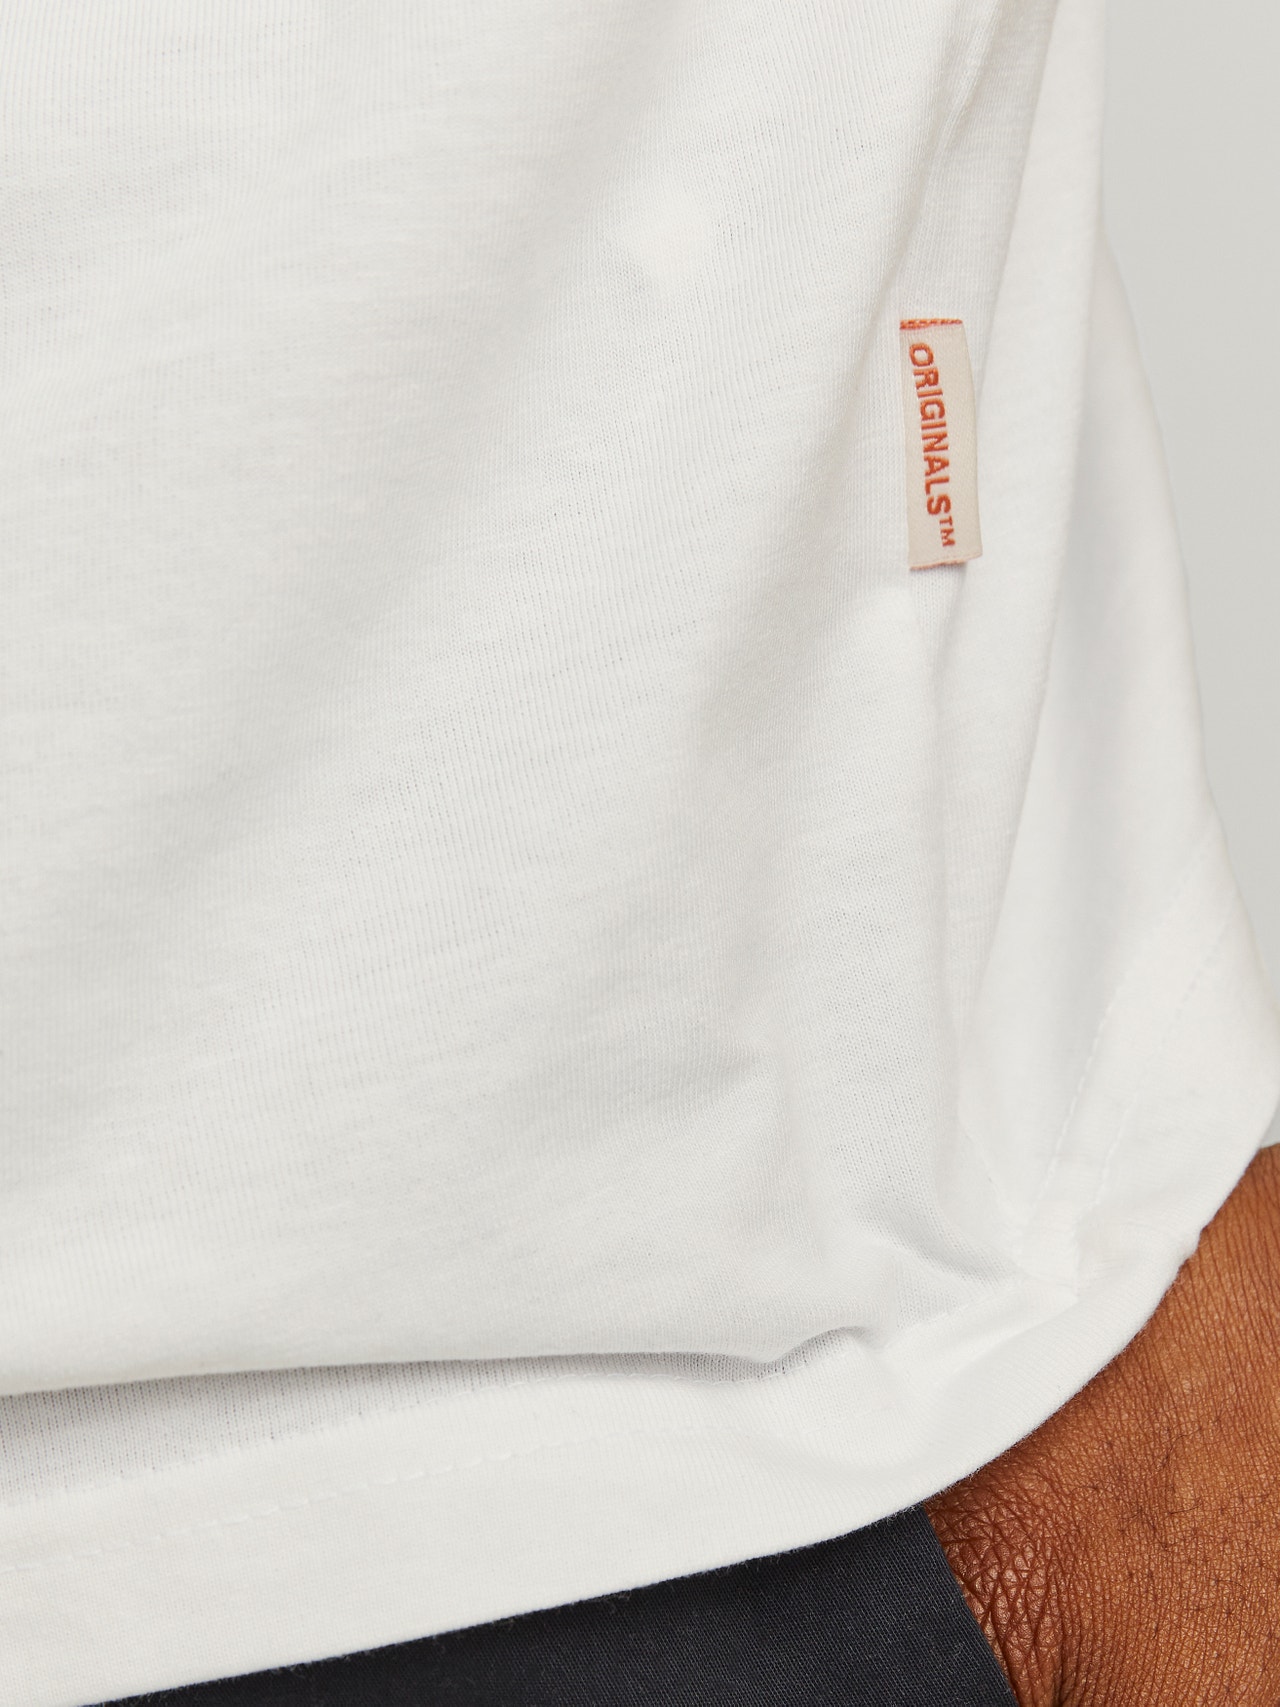 Jack & Jones Plus Size T-shirt Imprimé -Bright White - 12261542